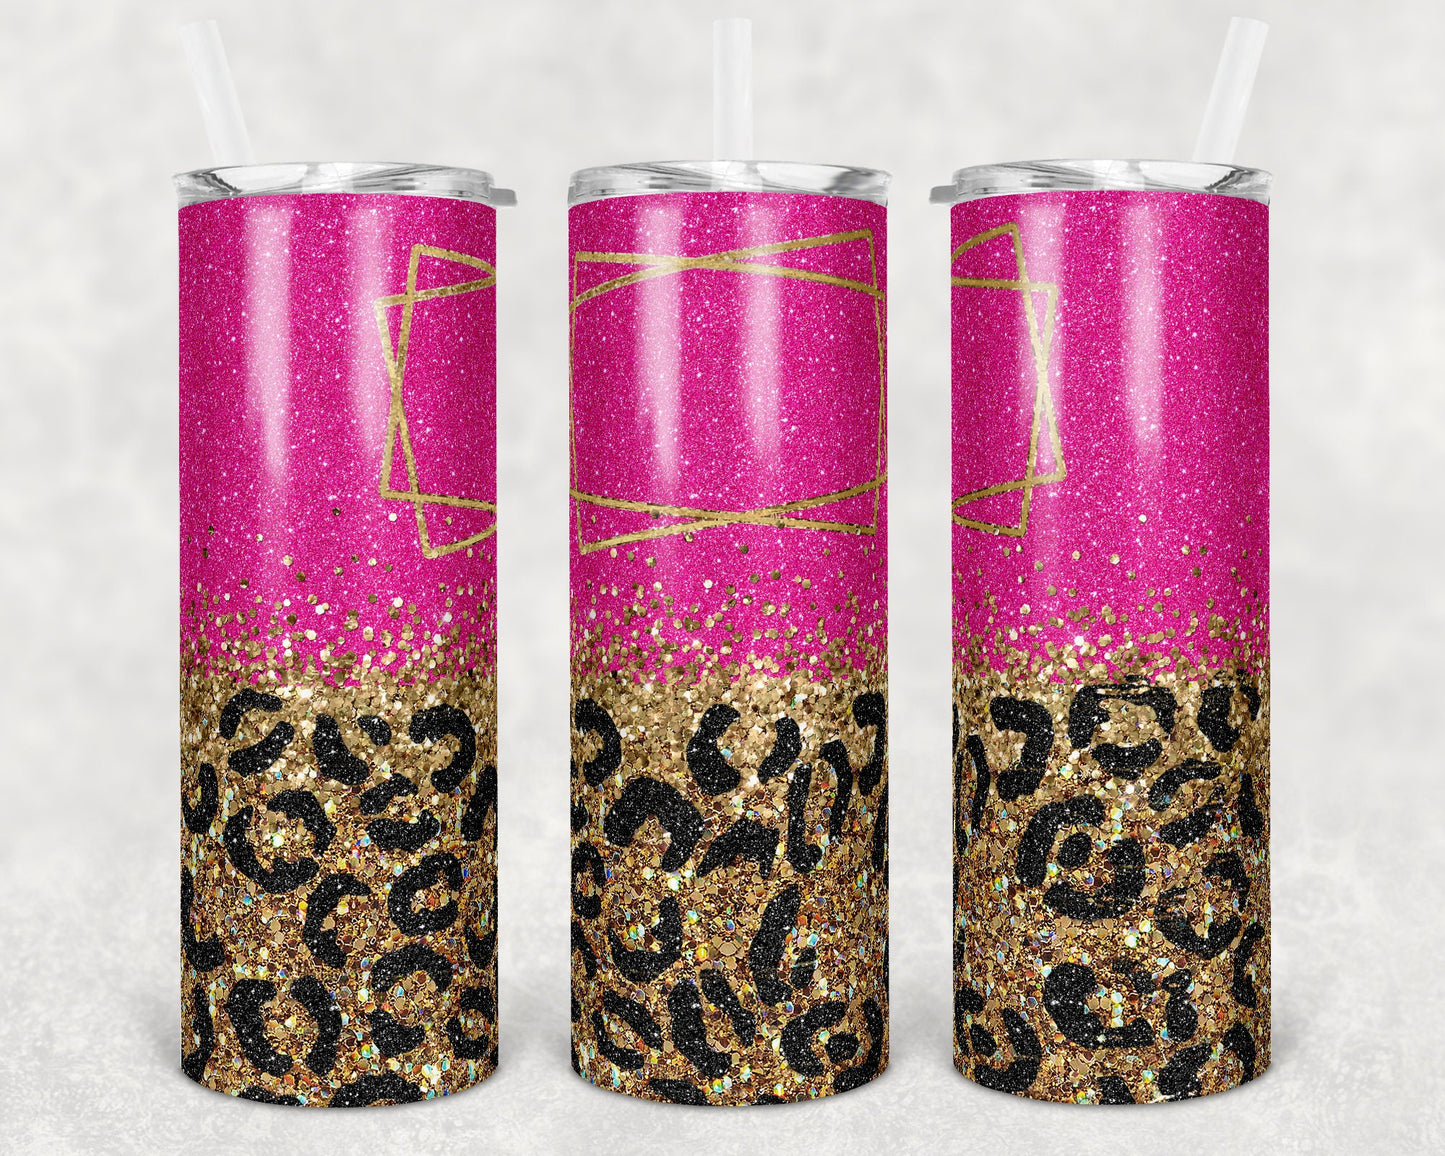 20 oz Skinny Tumbler Sublimation Design Template Hot Pink Black Gold Leopard Glitter Design Inst tumblers